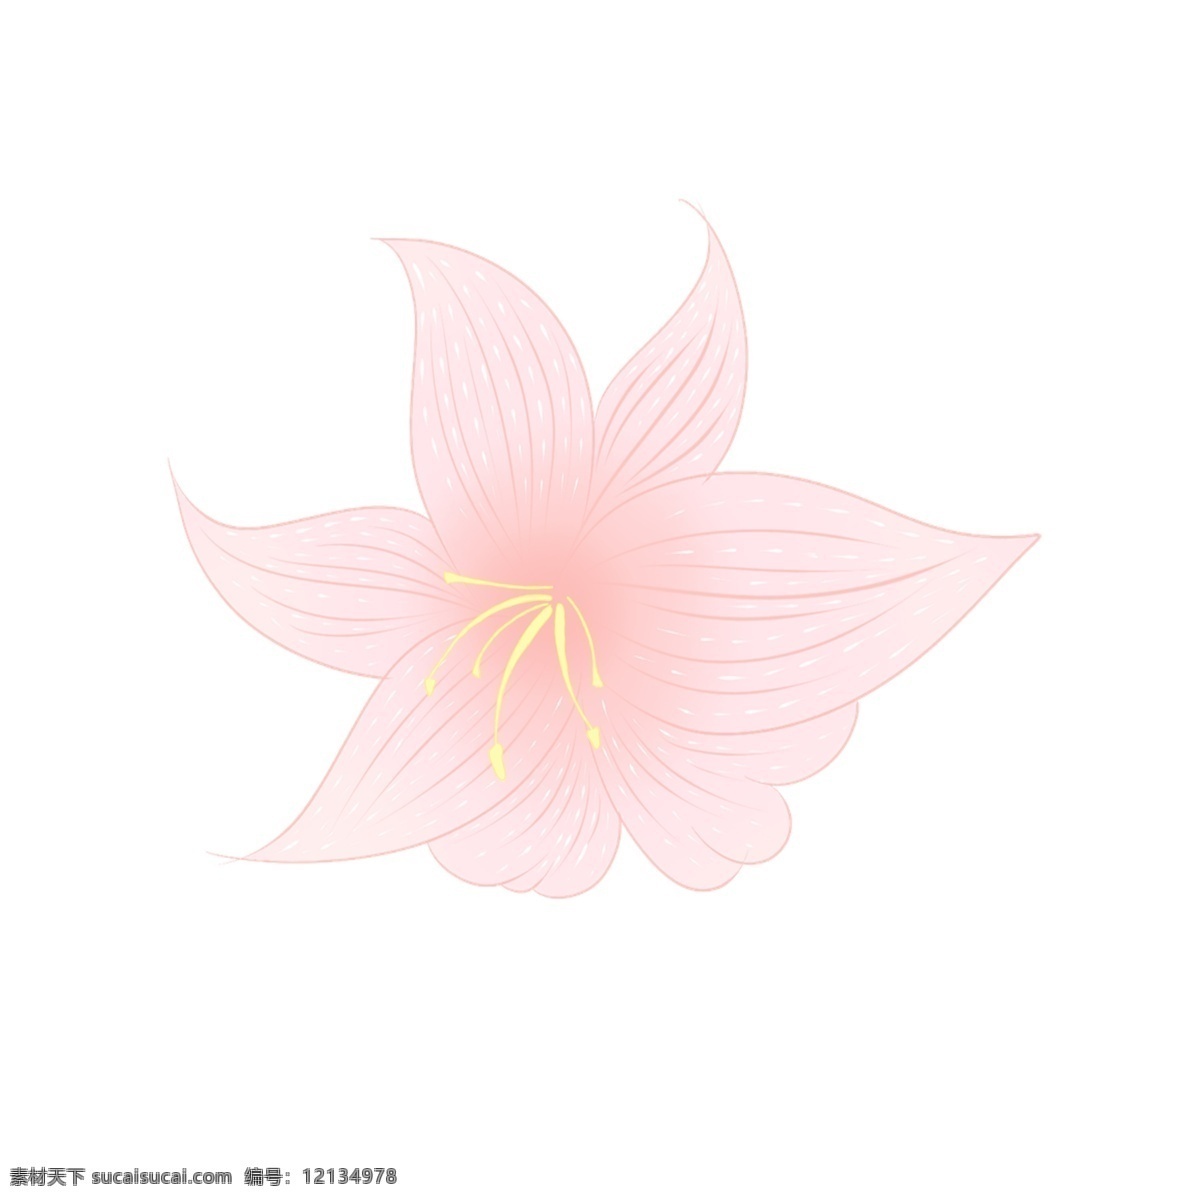 手绘 春天 桃花 花瓣 花朵 粉色 卡通 免抠 粉红色 春意盎然 花蕊 生机勃勃 插画